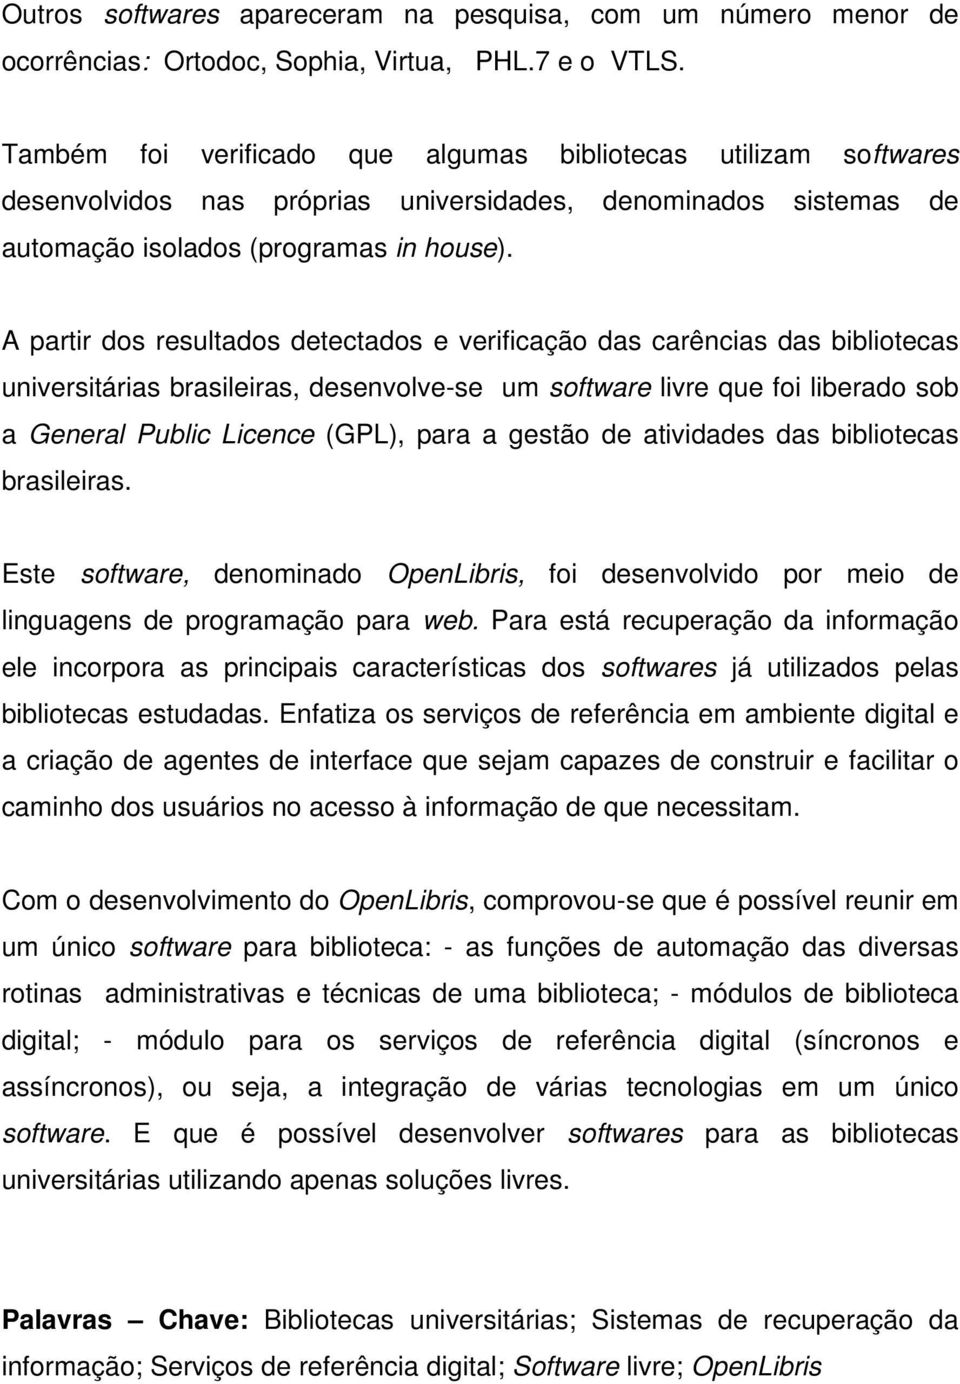 A partir dos resultados detectados e verificação das carências das bibliotecas universitárias brasileiras, desenvolve-se um software livre que foi liberado sob a General Public Licence (GPL), para a